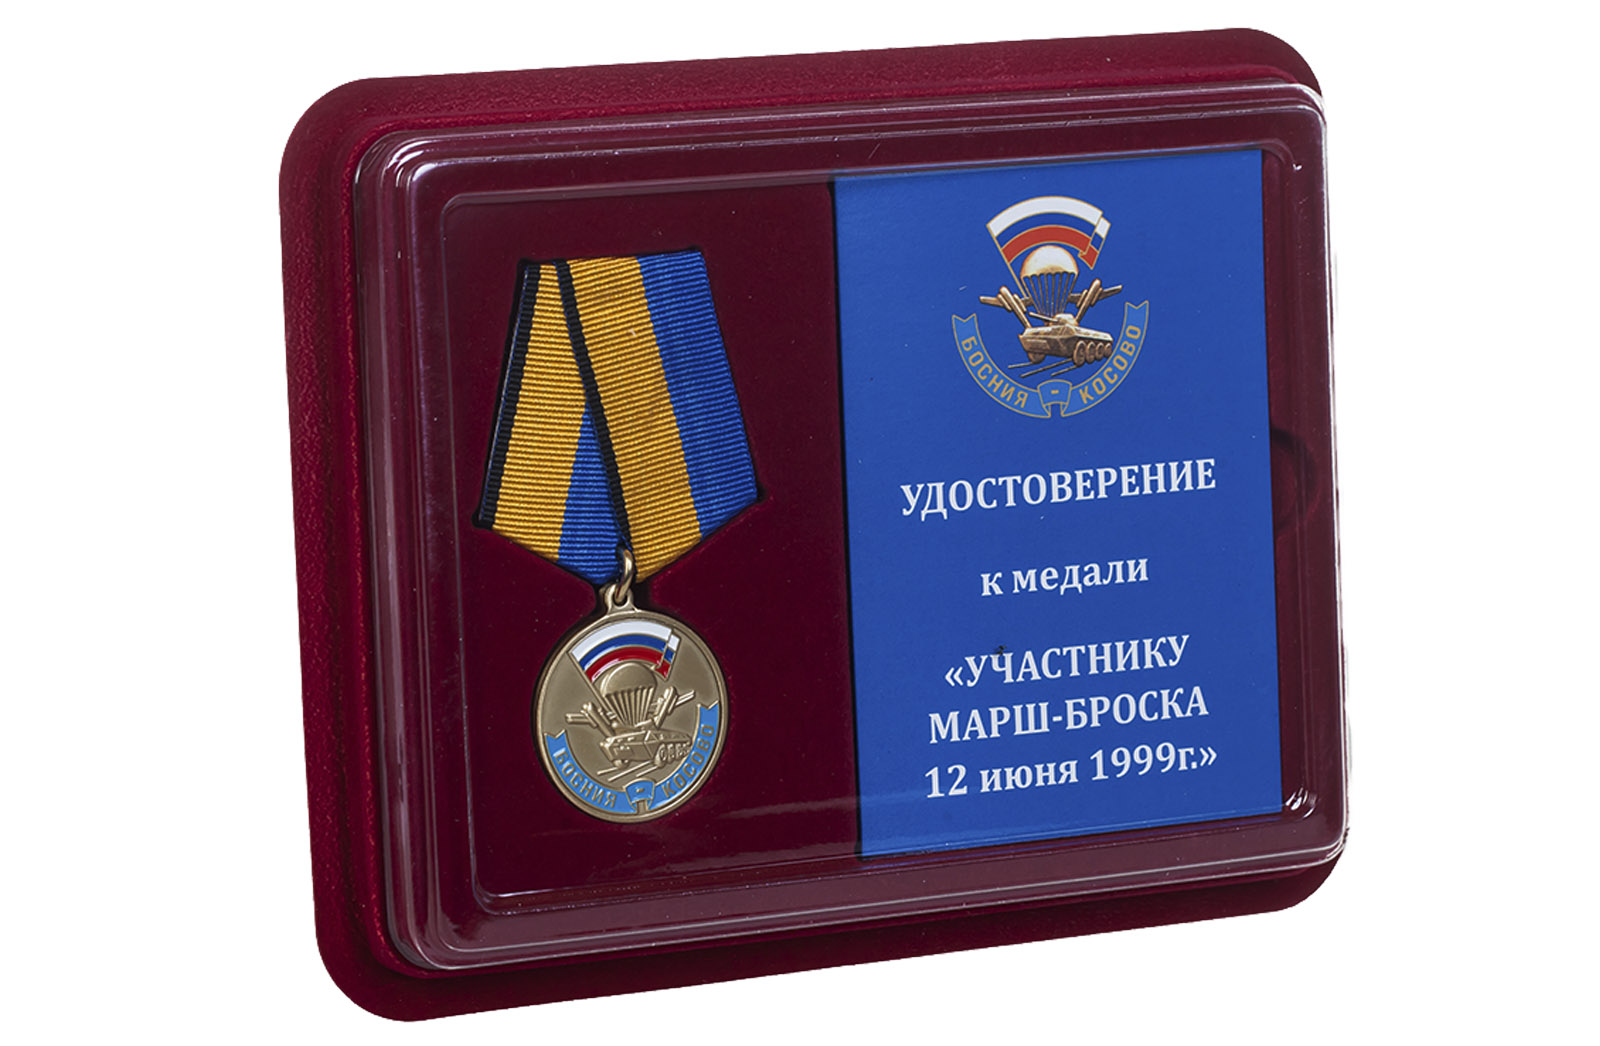 Купить памятную медаль Участнику марш-броска 12.06.1999 г. Босния-Косово онлайн с доставкой